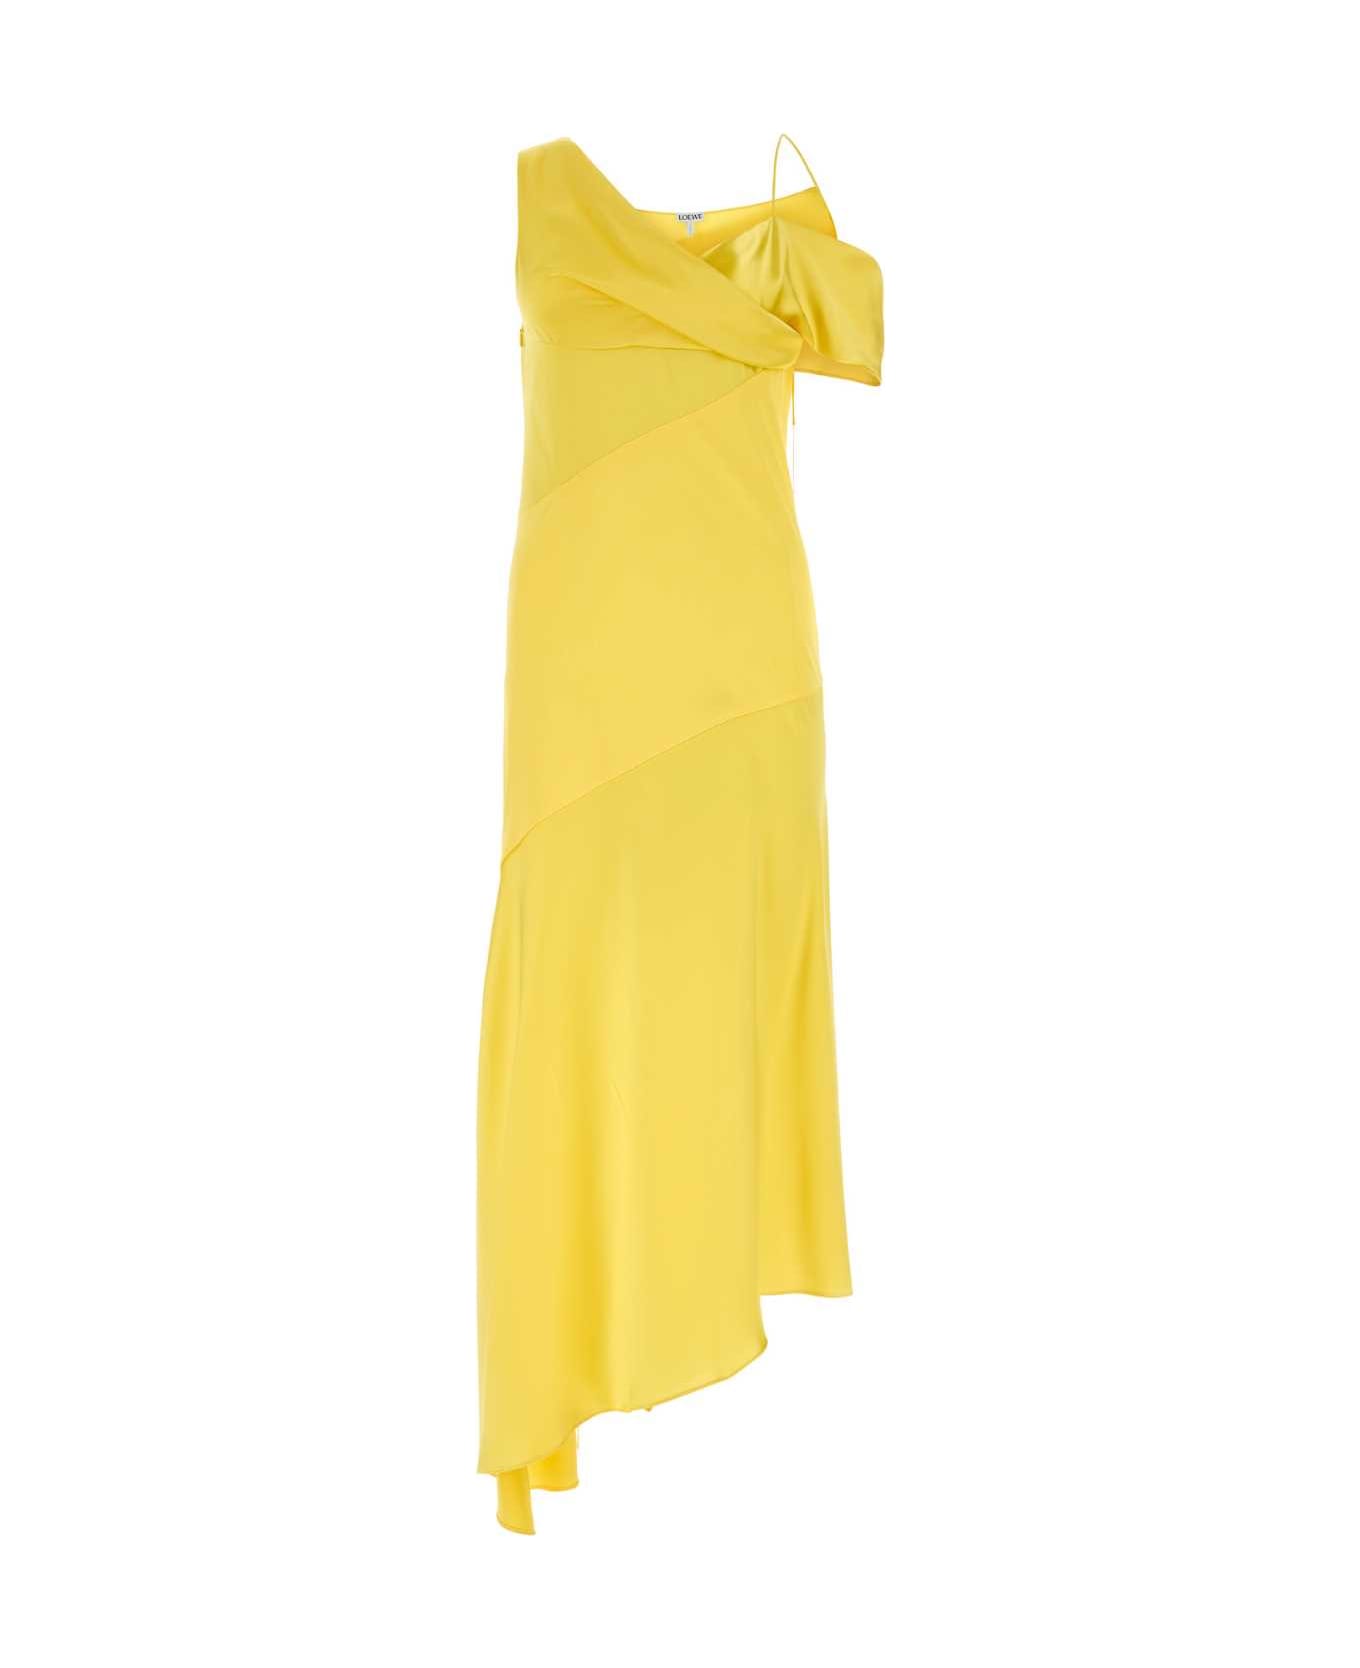 Loewe Yellow Satin Dress - YELLOW